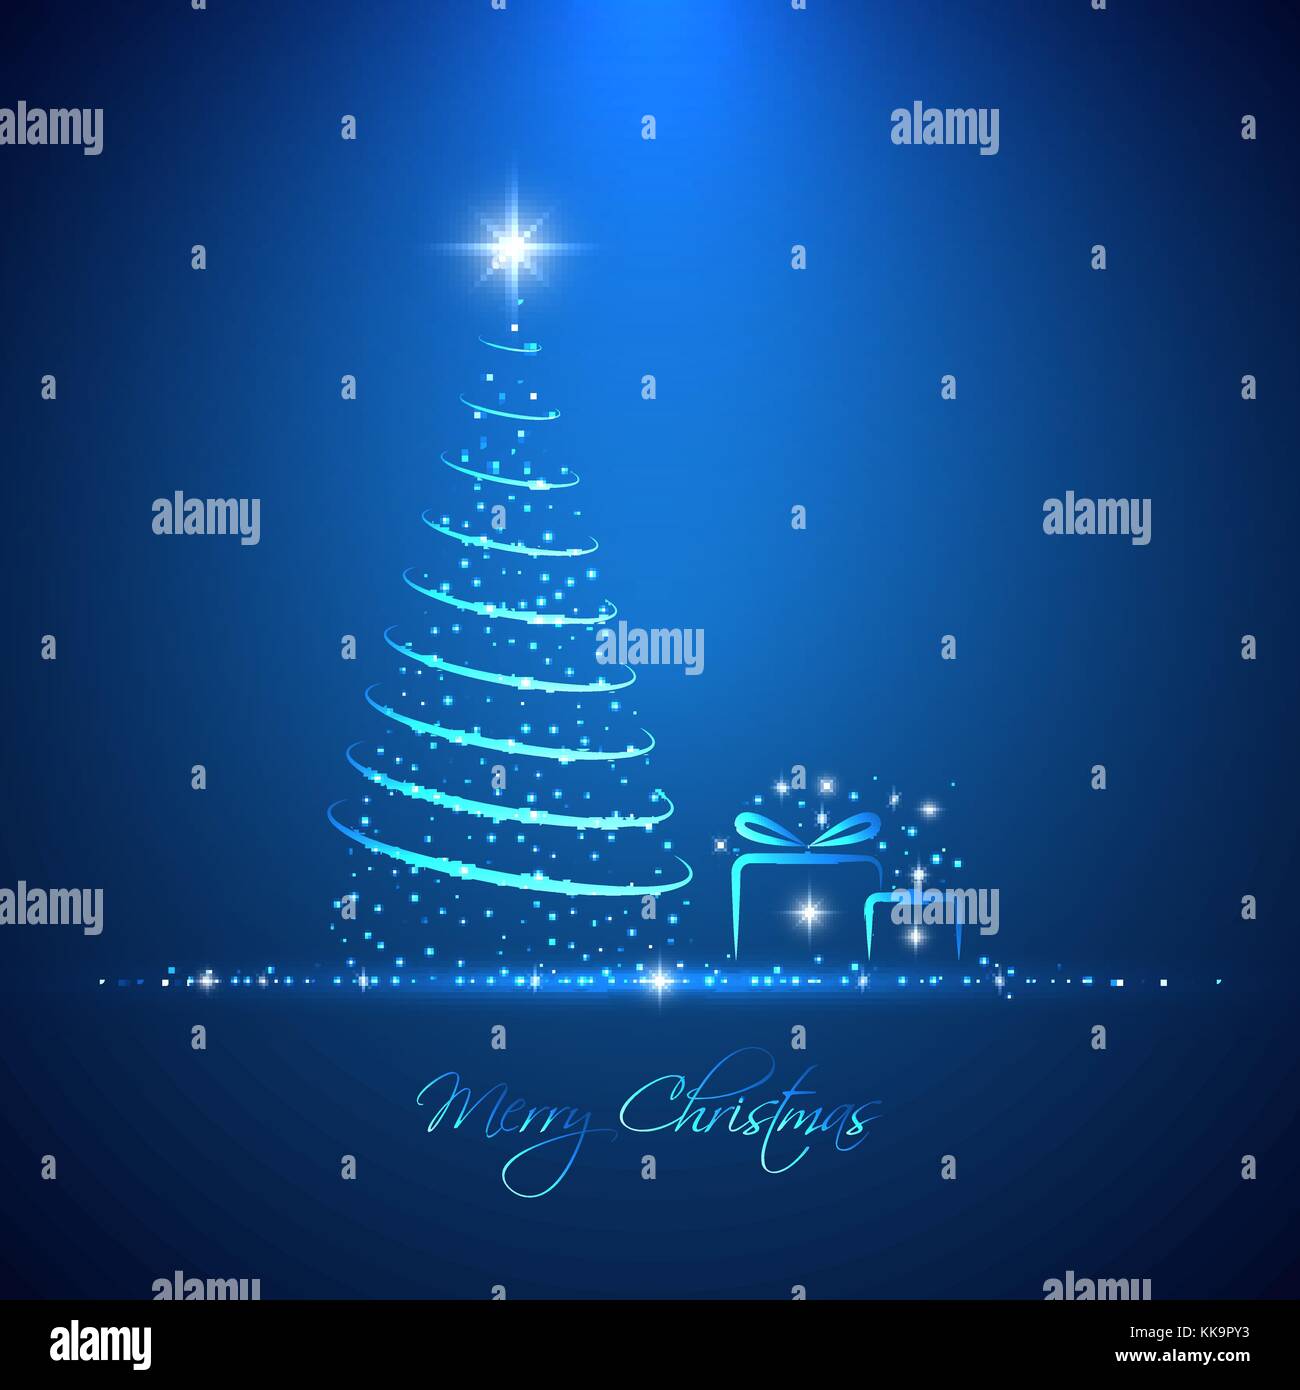 Merry Christmas fondo con luz brillante neón abstracto árbol de navidad y  cajas de regalo para tu invitación o diseño de tarjetas de felicitación  Imagen Vector de stock - Alamy